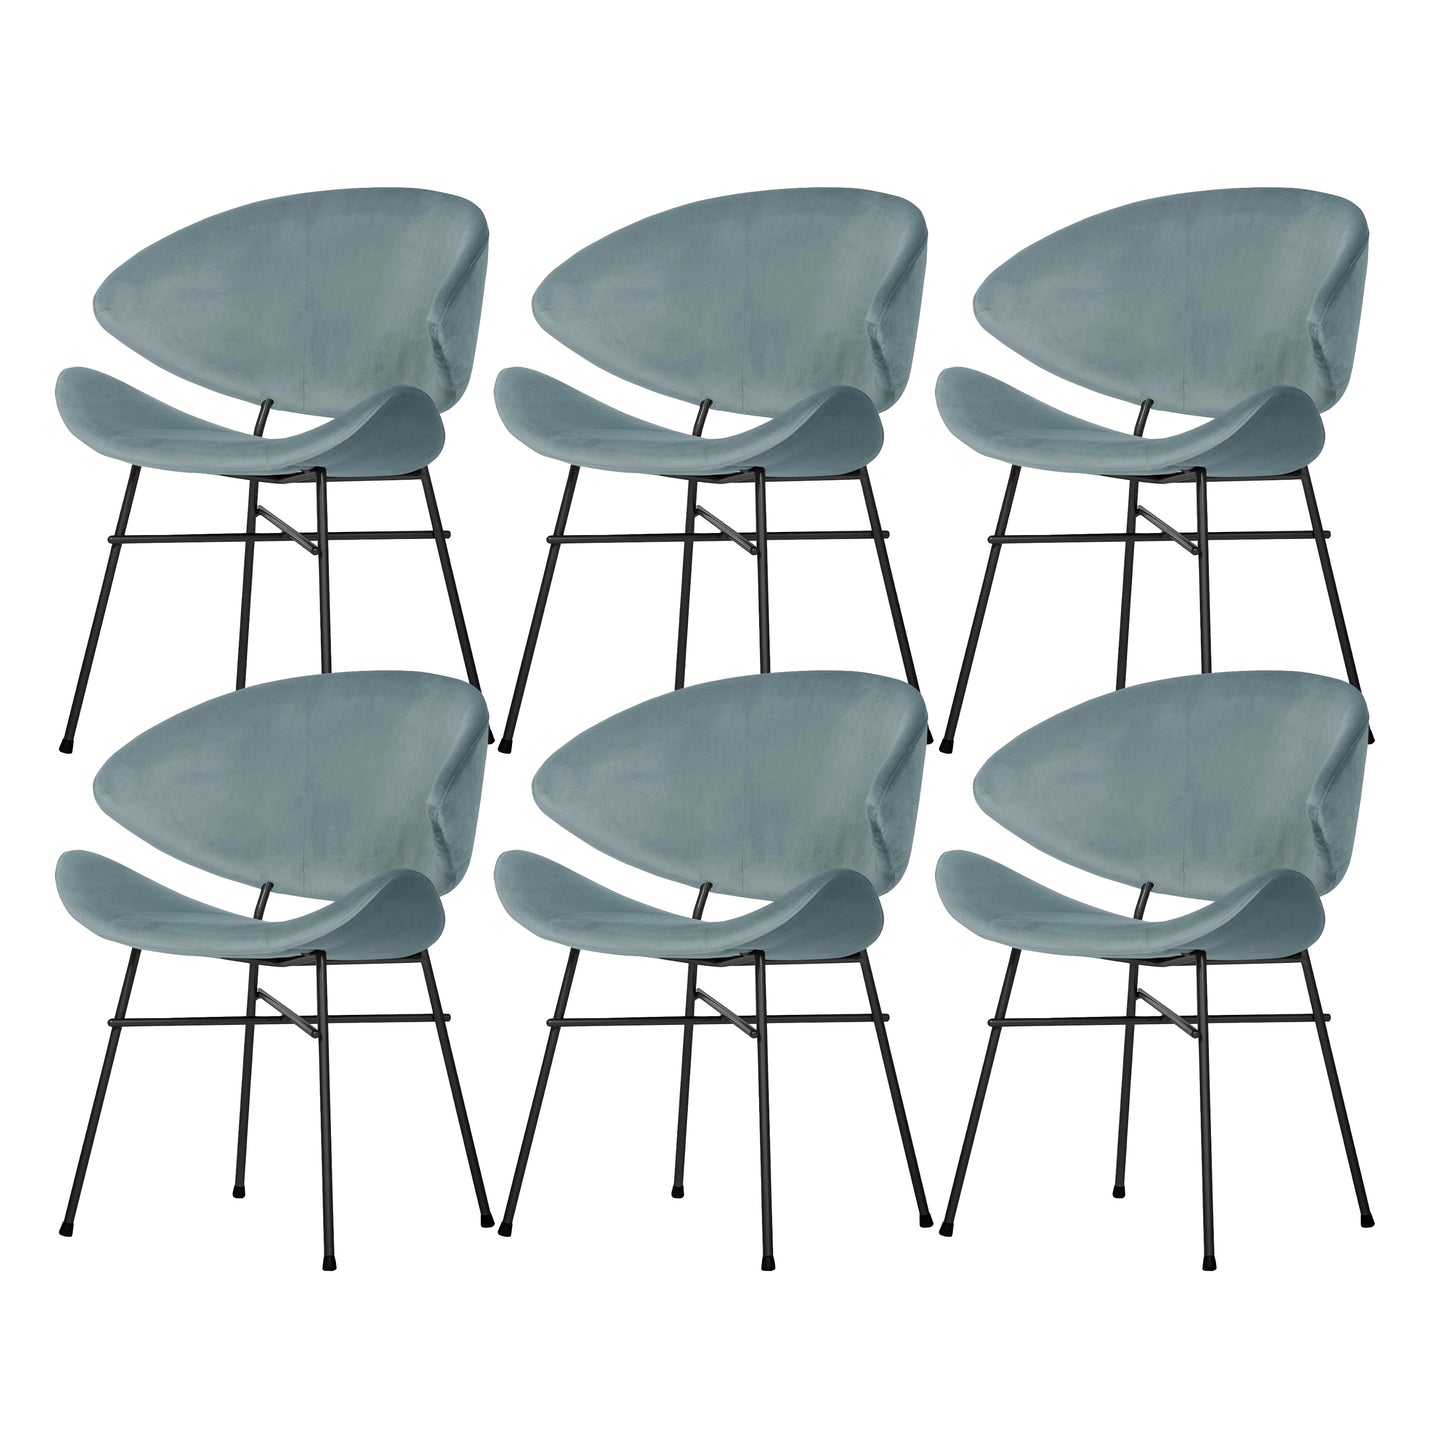 Krzesło Cheri Velours Standard - 6 sztuk